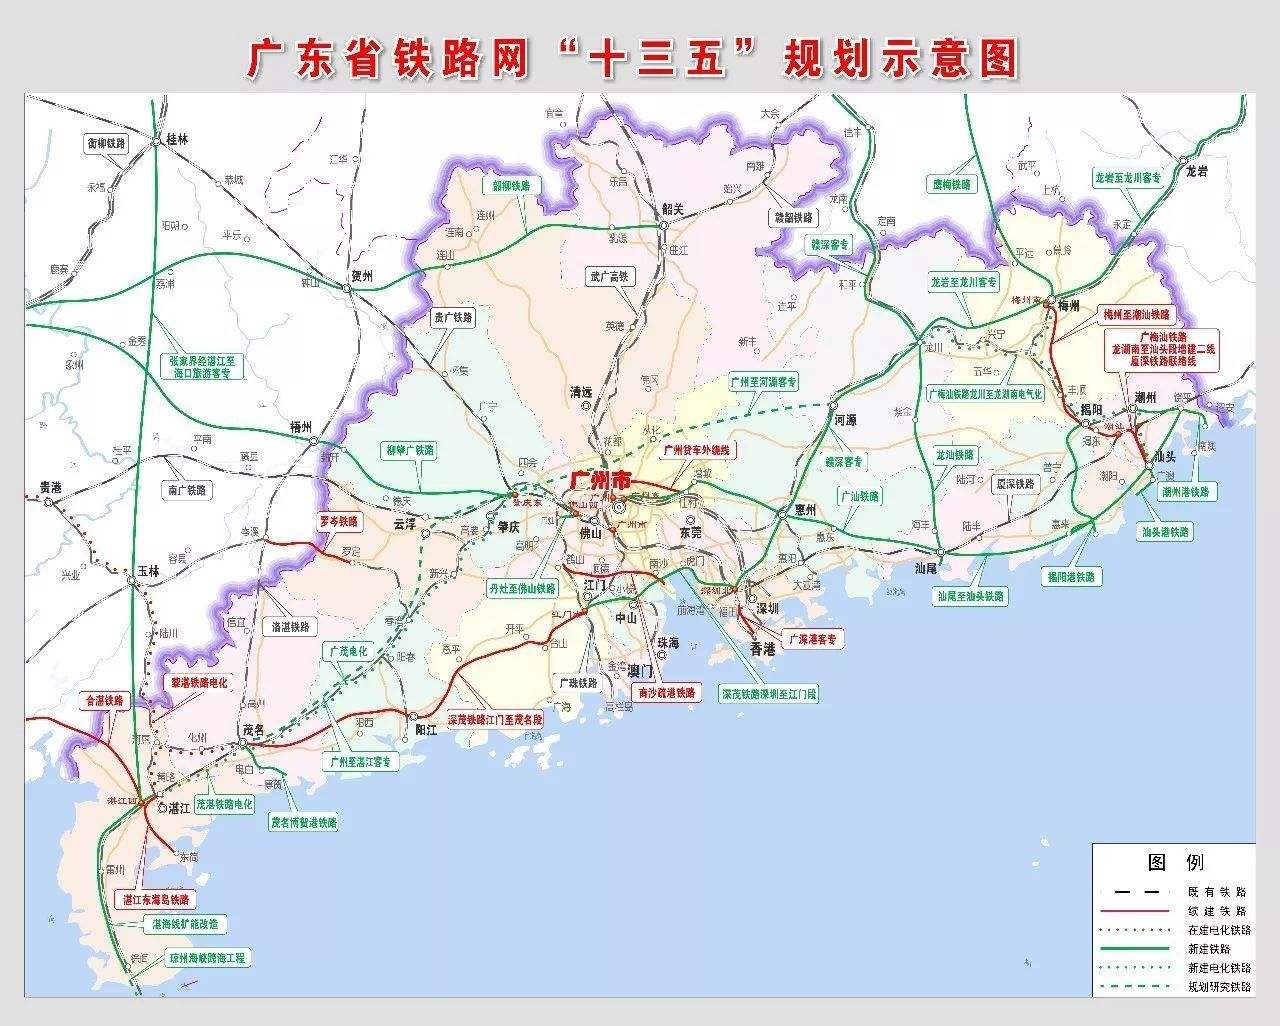 广东铁路网 广河客专(即广河高铁)是湛江-肇庆-广州-河源铁路通道的